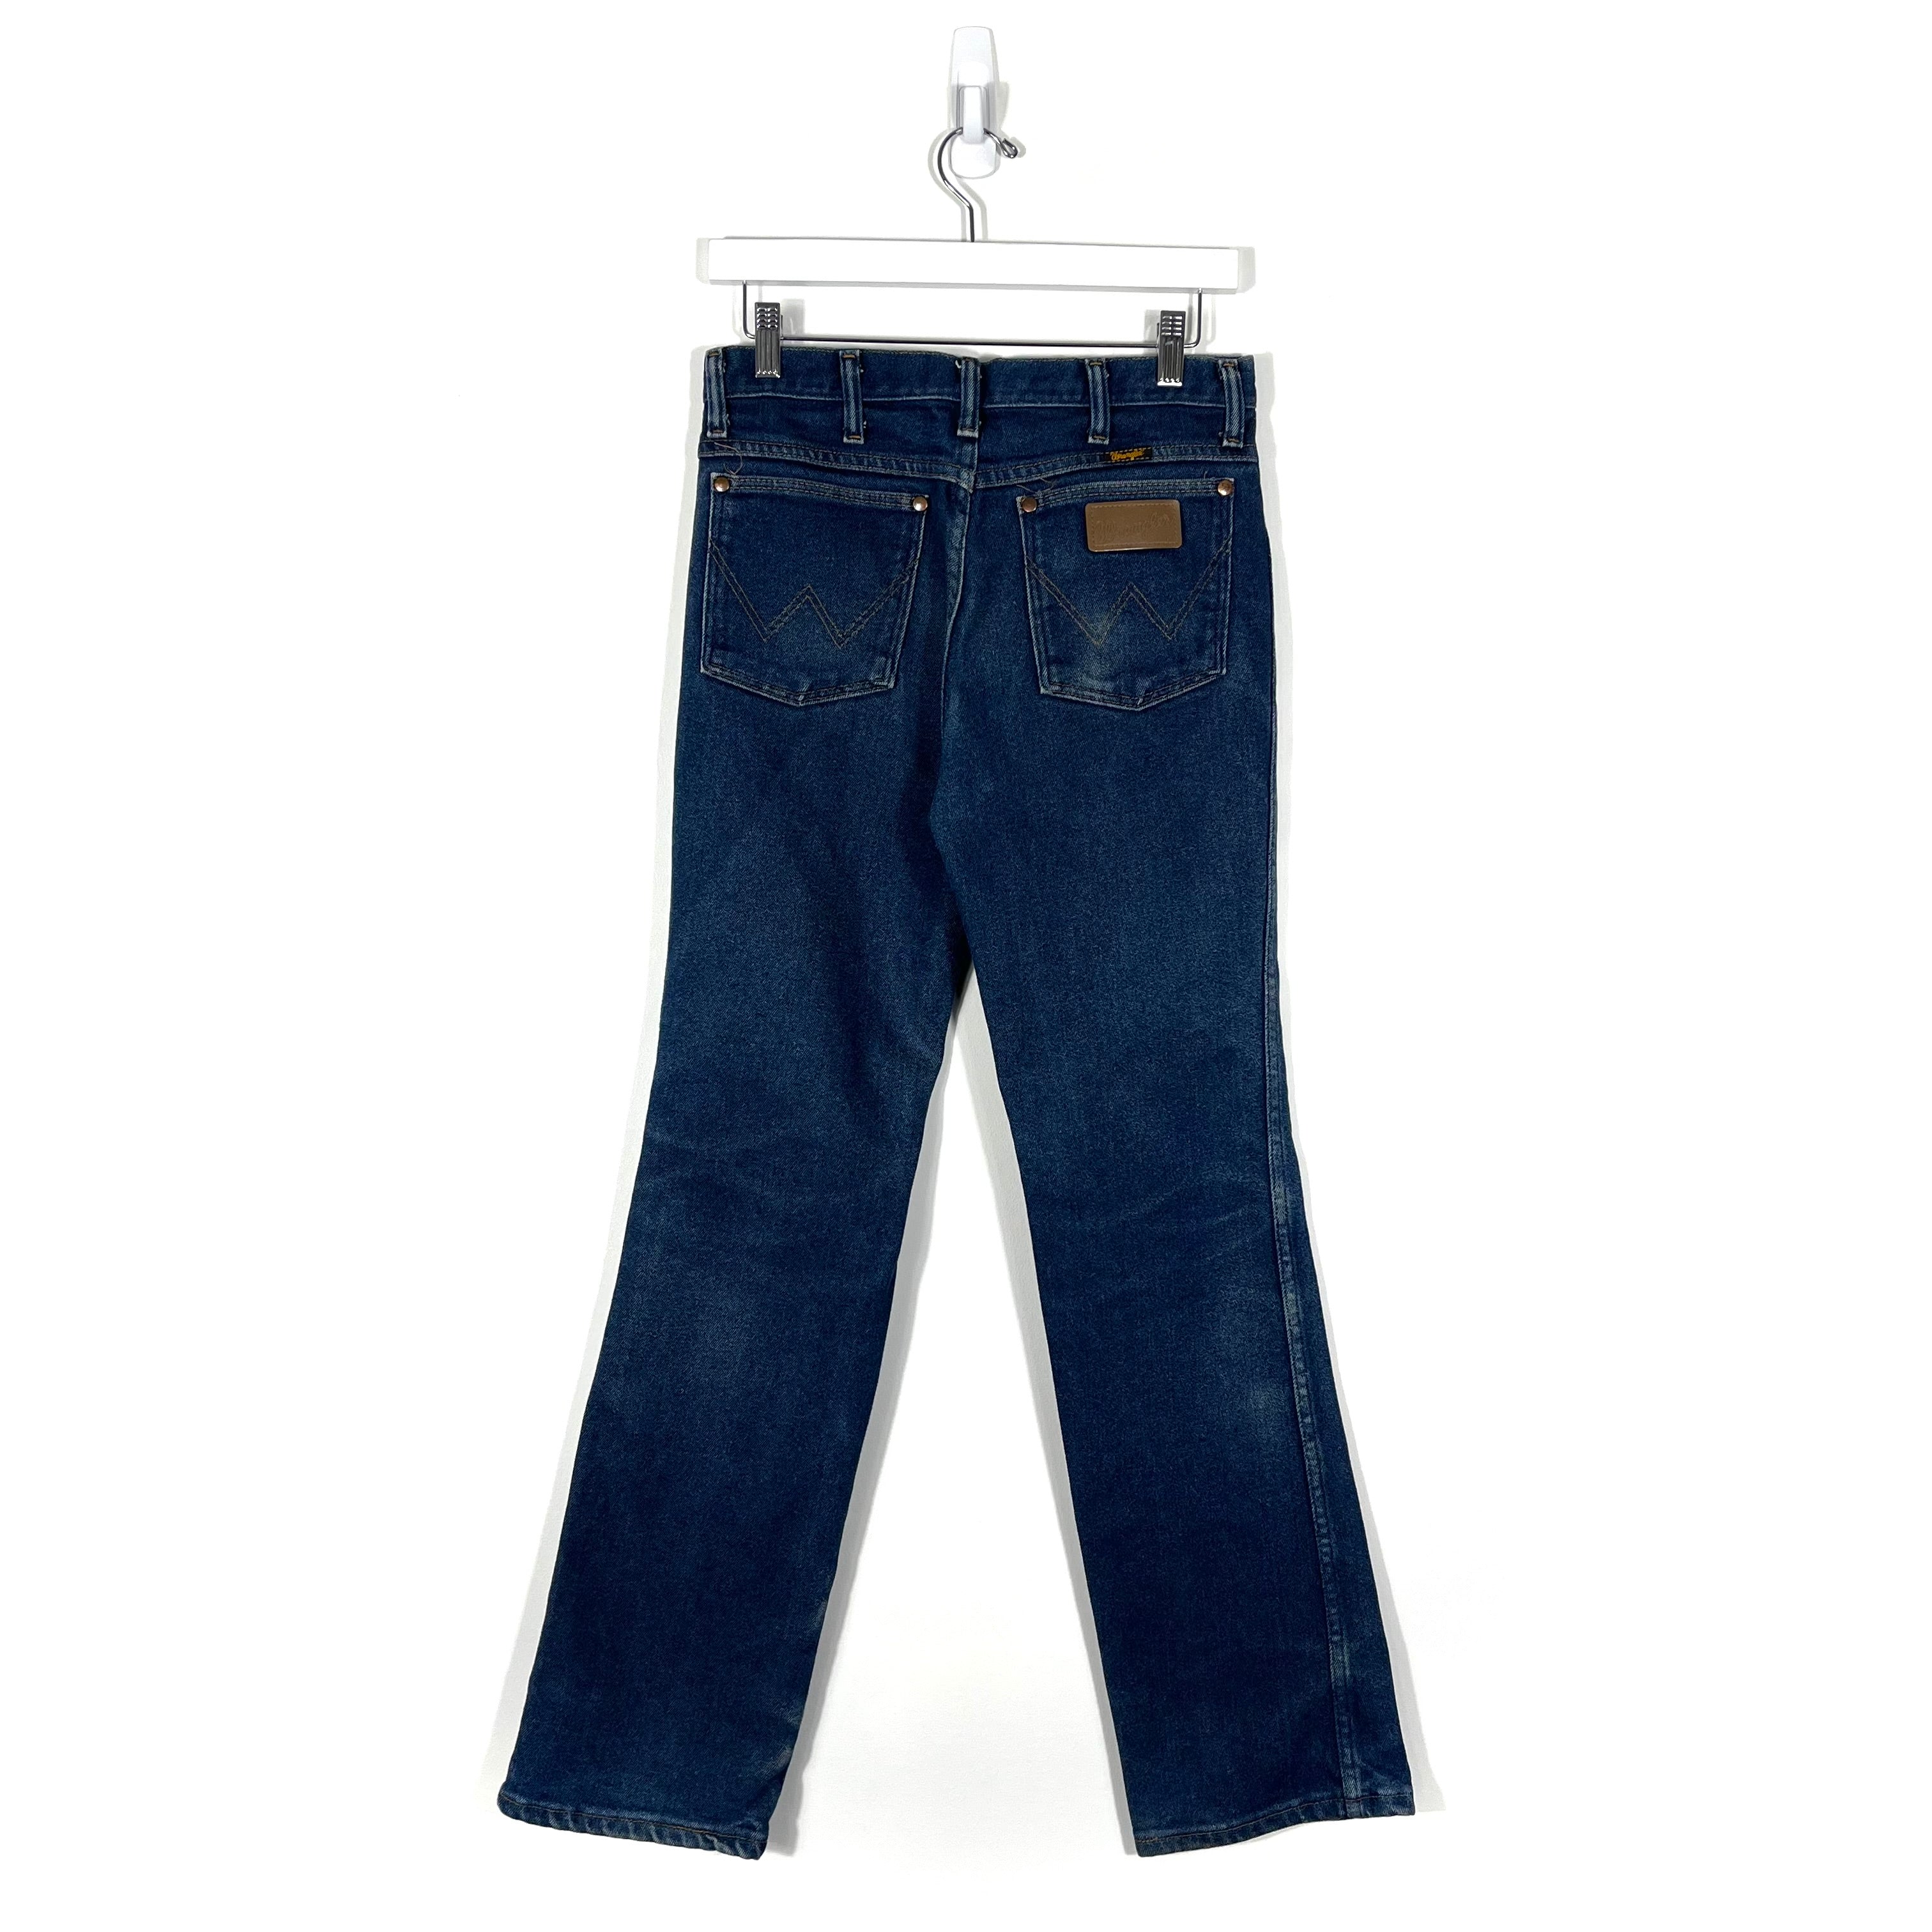 Vintage Wrangler Jeans - Women's 30/32